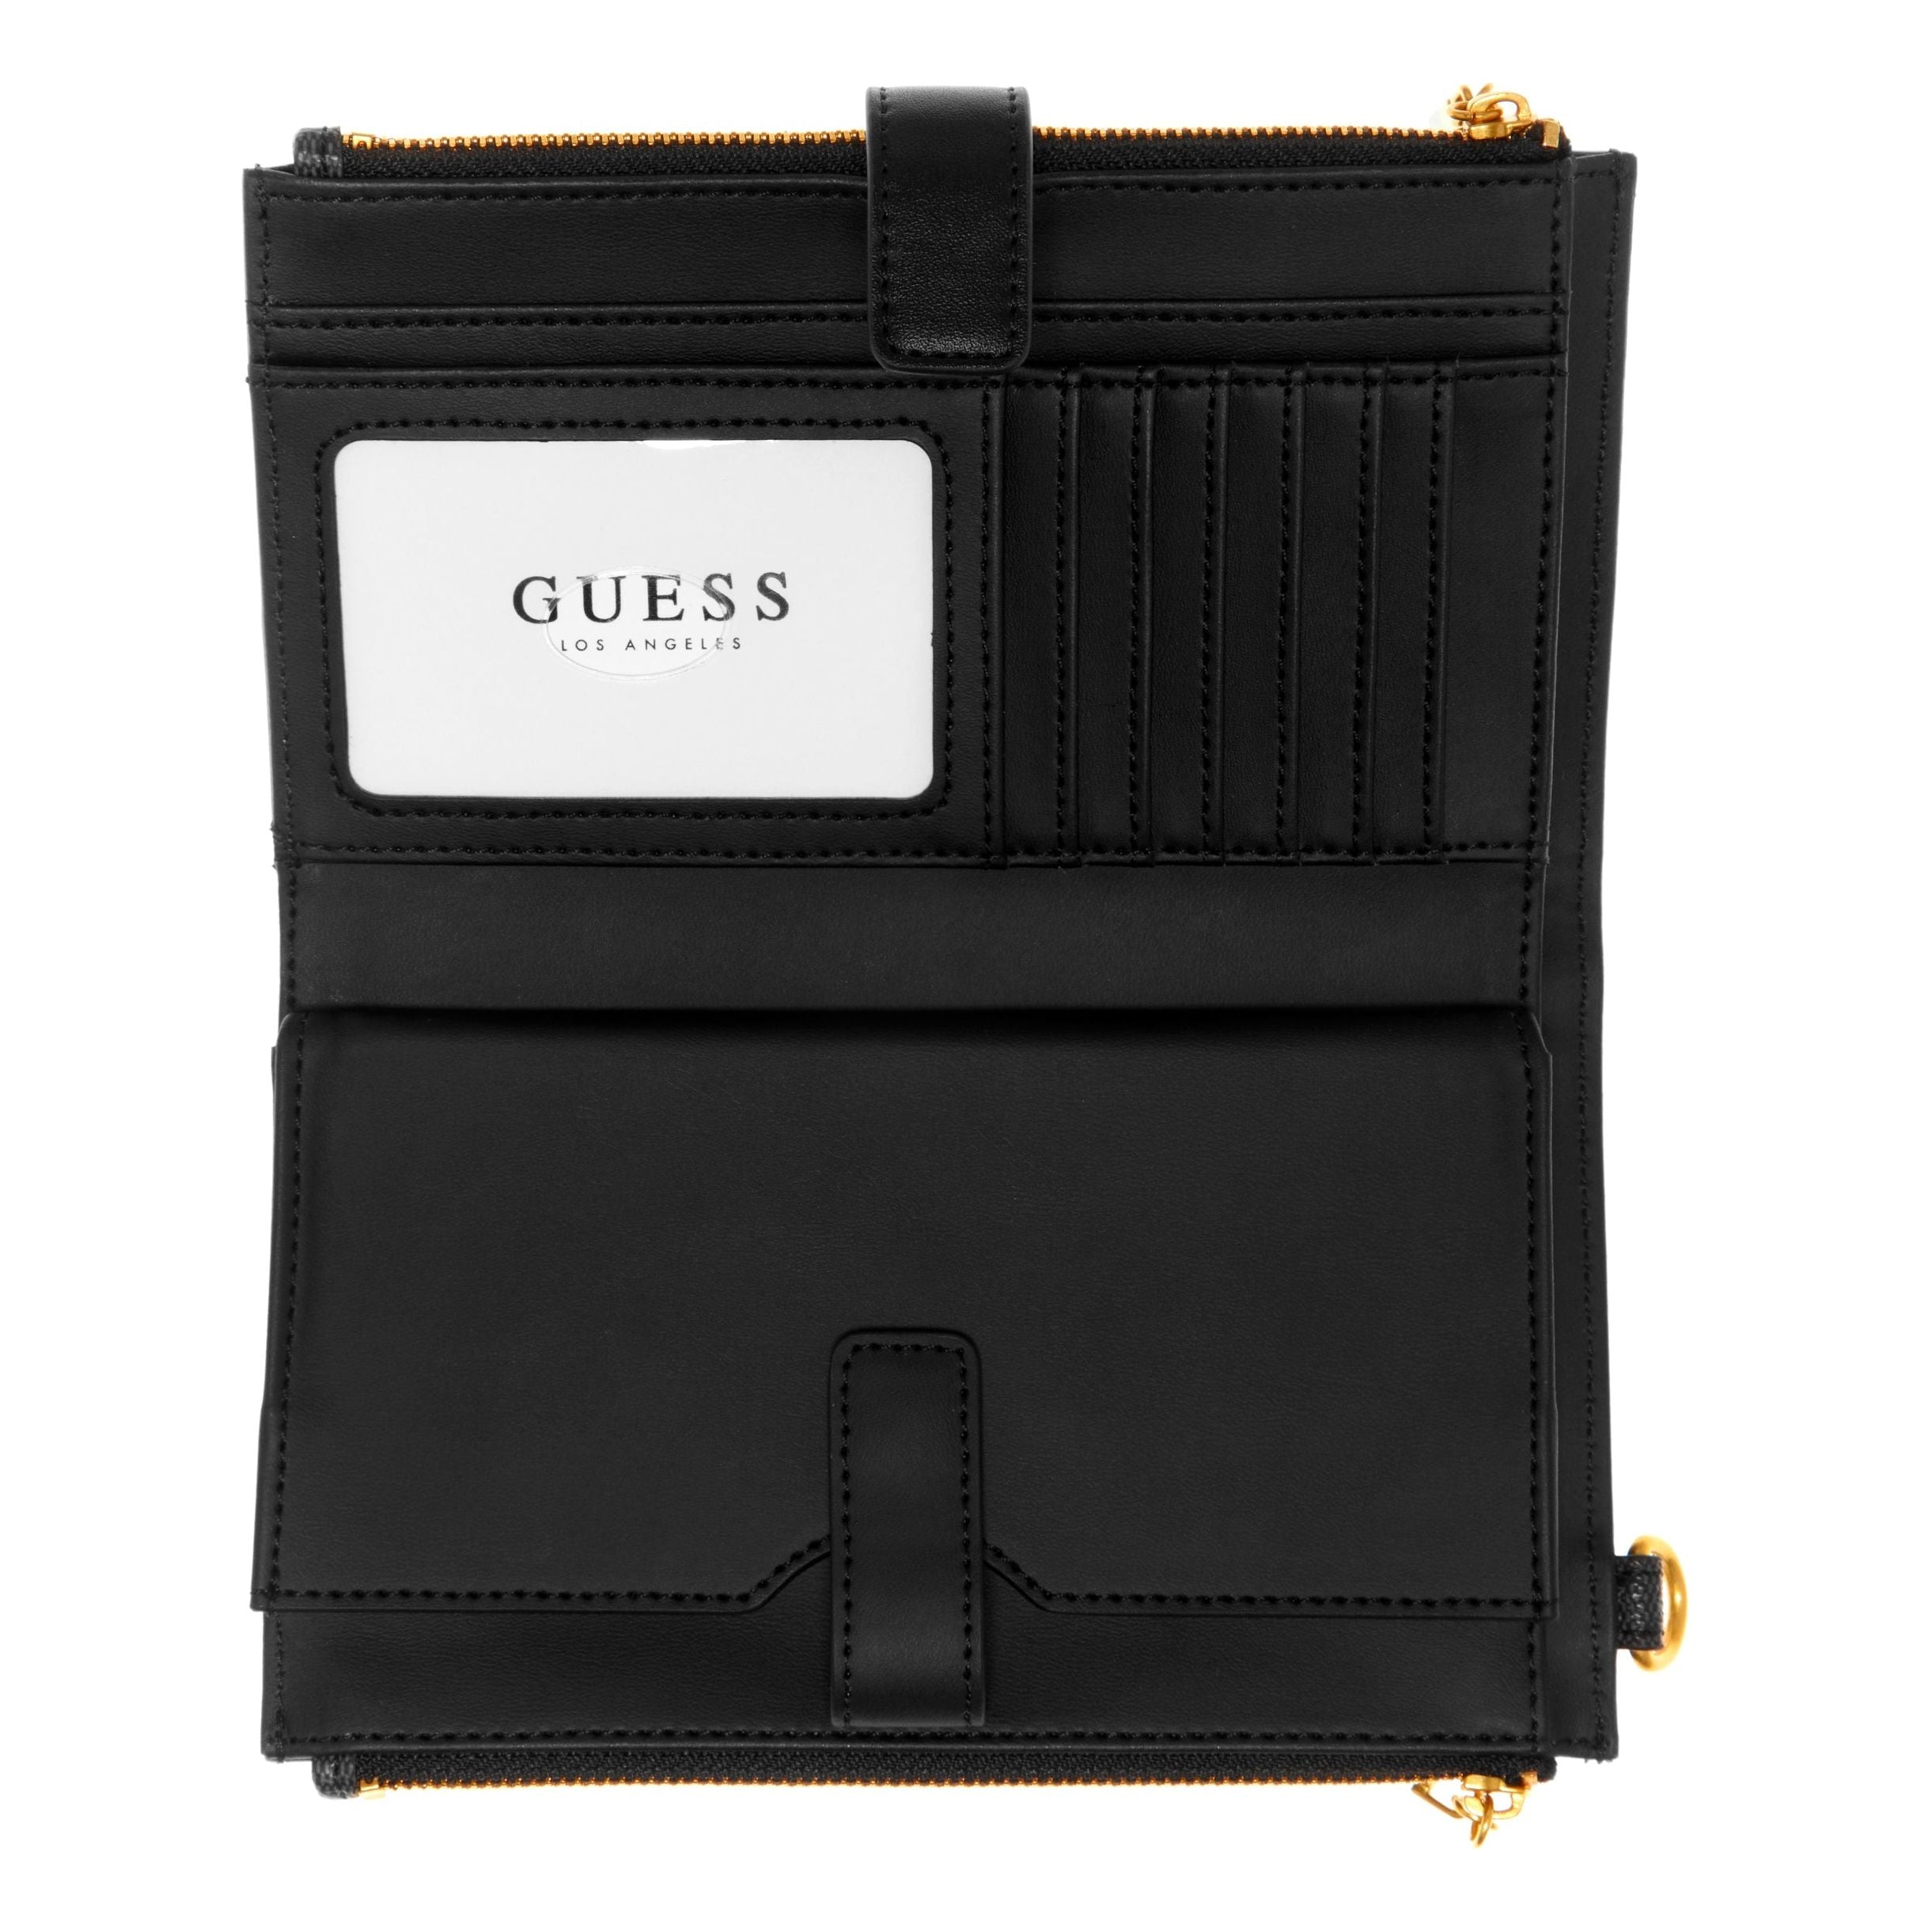 Guess - Noreen Double Zip Organizer Wallet in Black